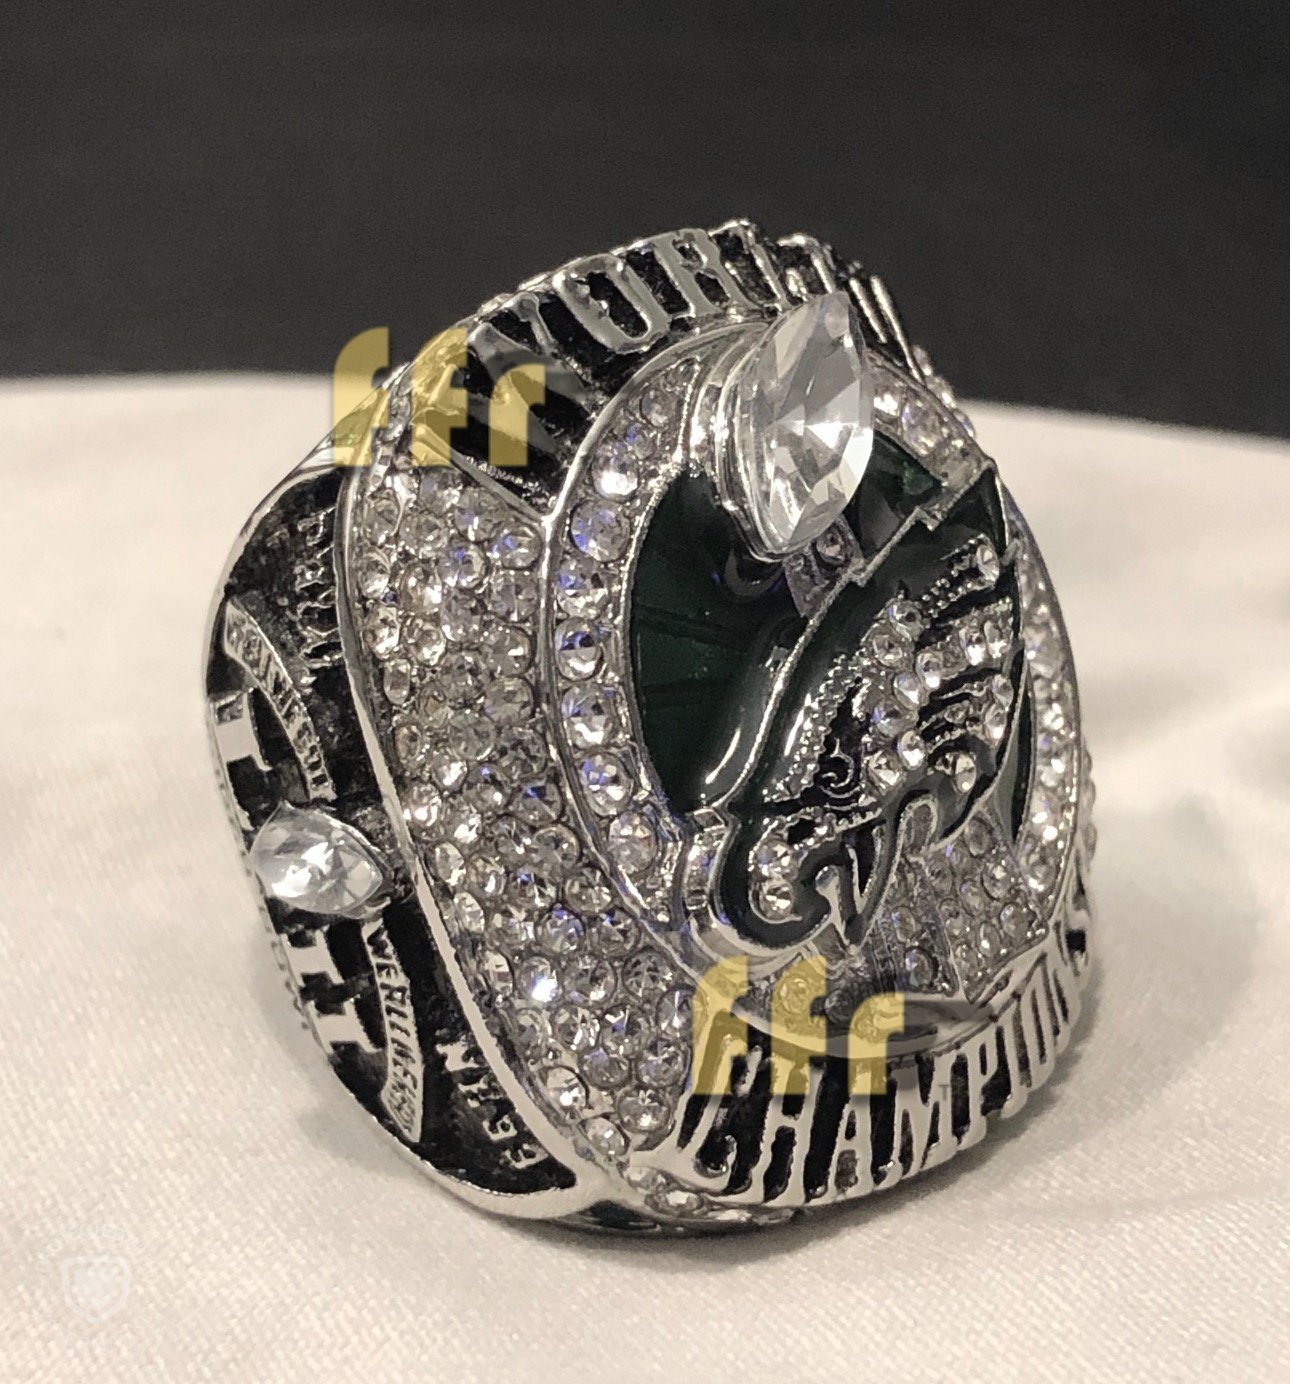 Philadelphia Eagles Super Bowl Ring (2018) - Rings For Champs, NFL rings, MLB rings, NBA rings, NHL rings, NCAA rings, Super bowl ring, Superbowl ring, Super bowl rings, Superbowl rings, Dallas Cowboys